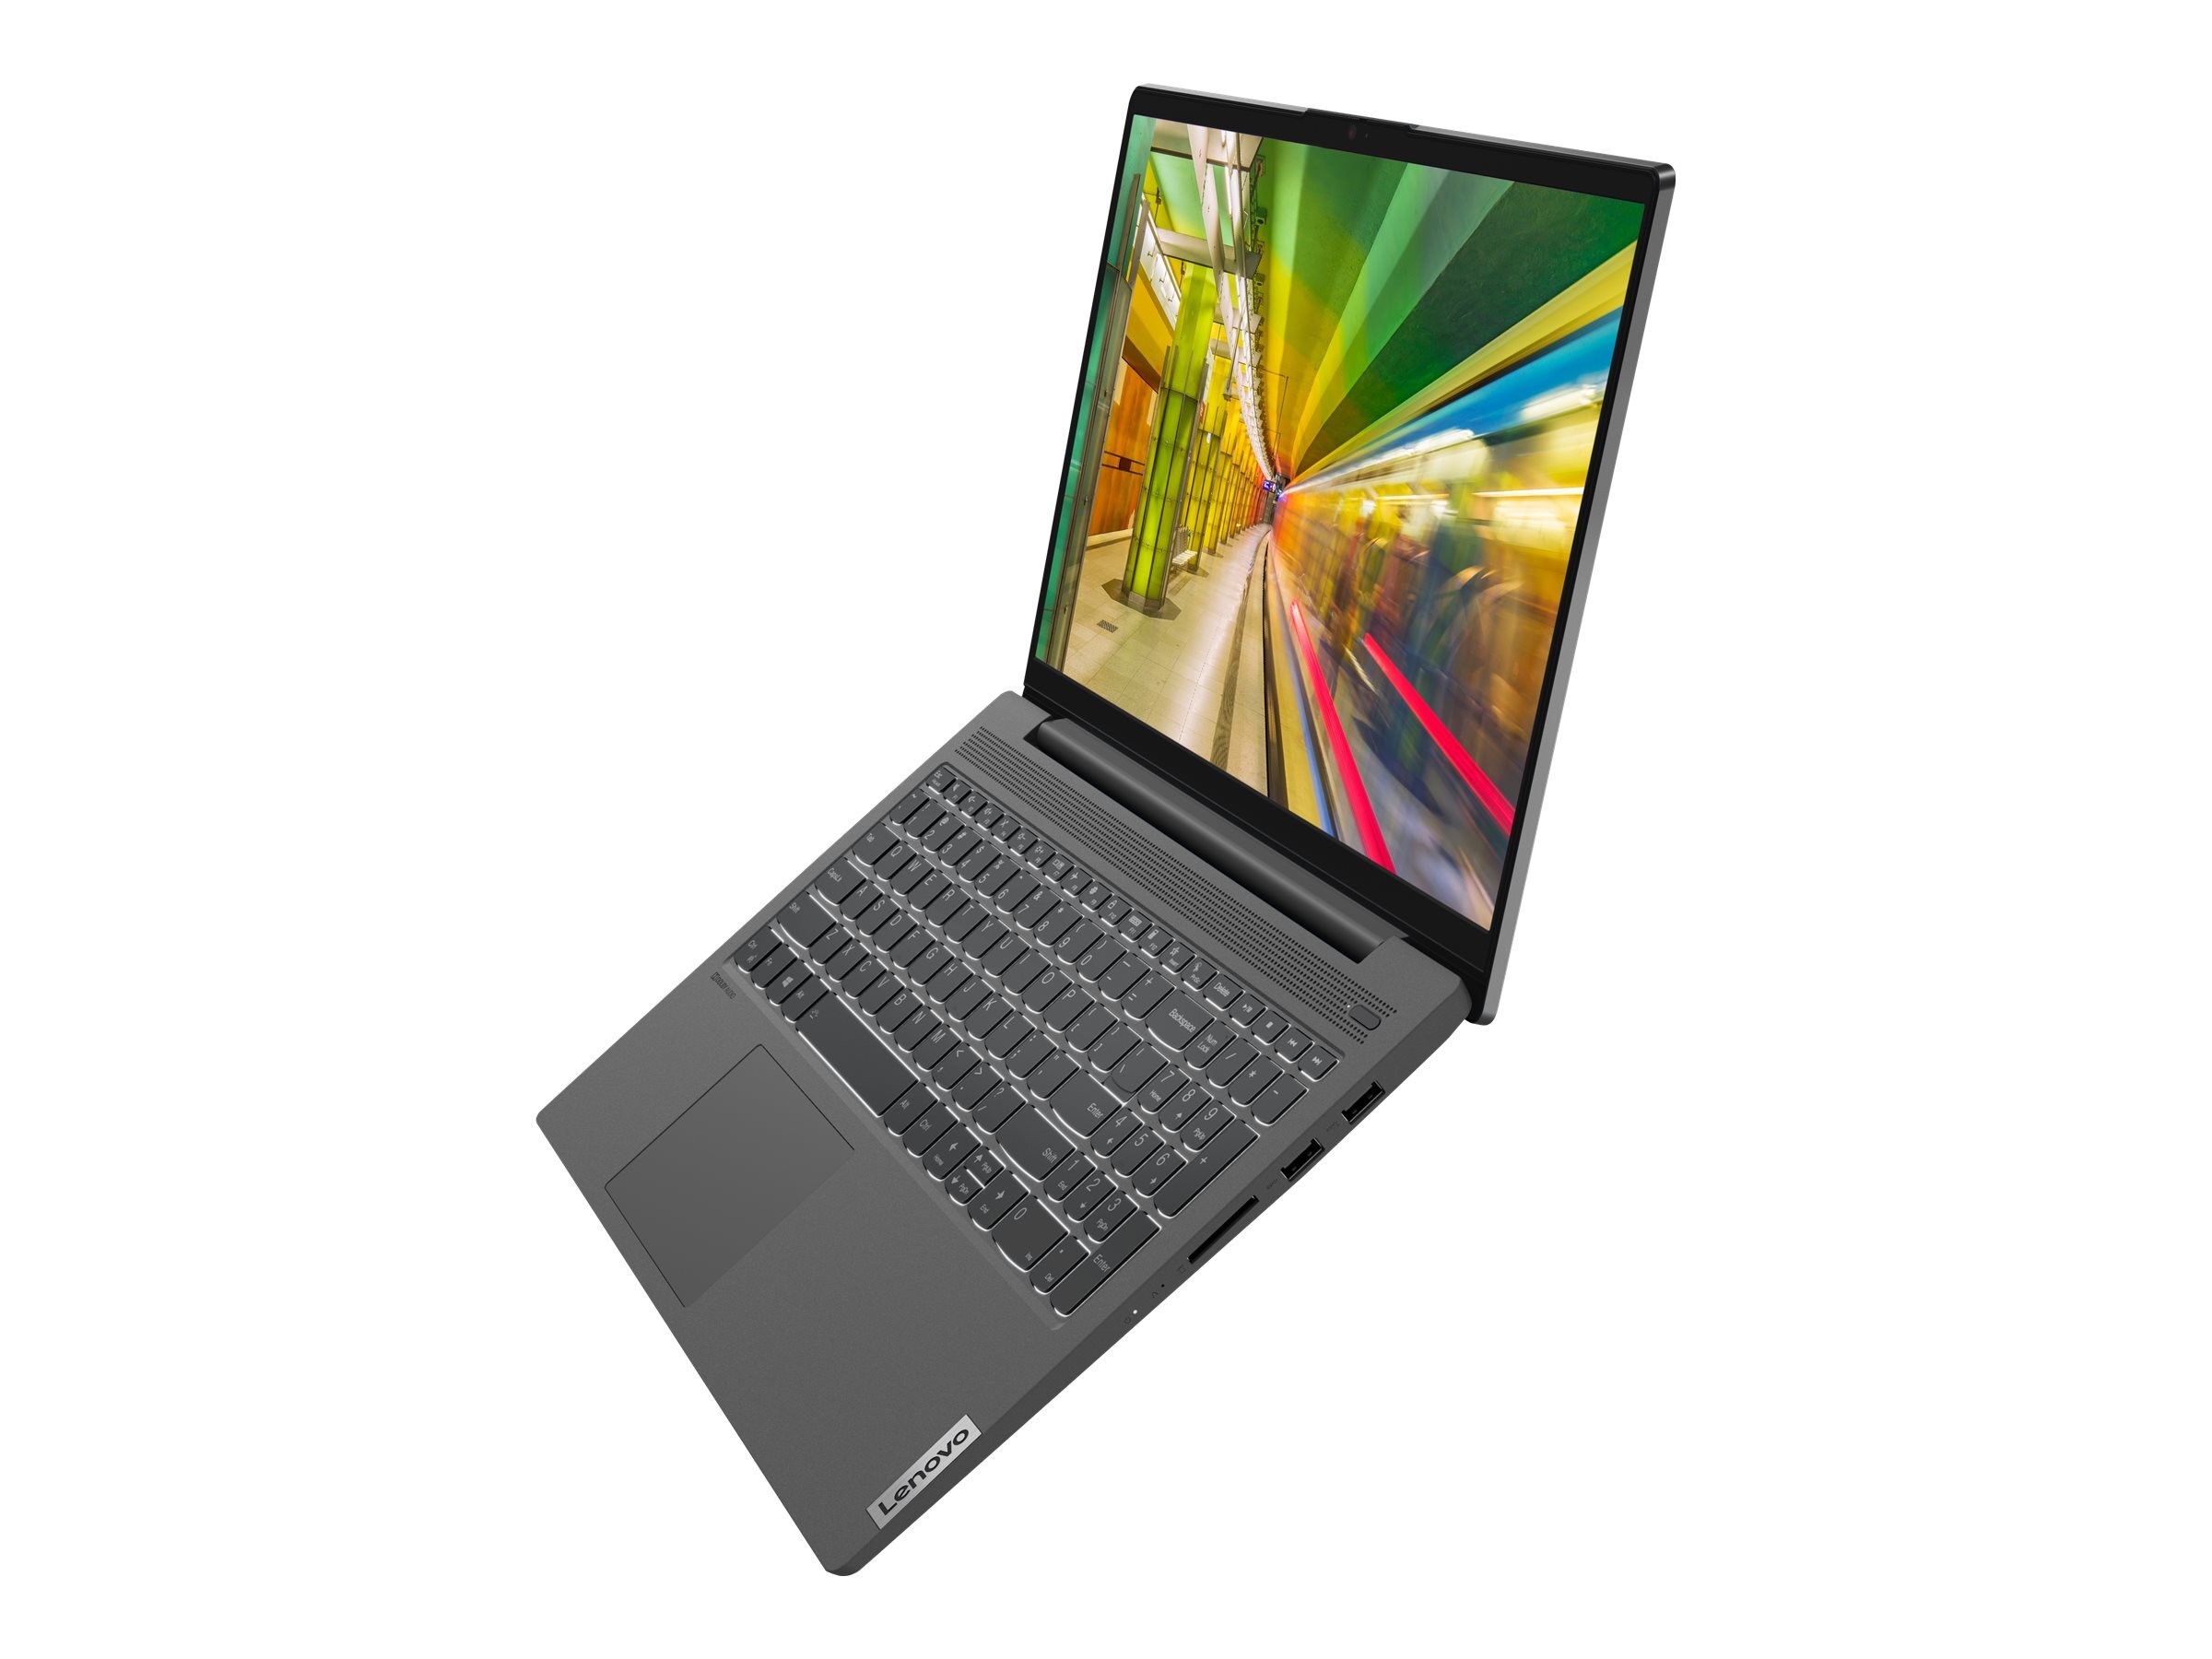  قیمت لپ تاپ لنوو 15.6 اینچی مدل IdeaPad 5 15IIL05 پردازنده i5 1035G1 | لاکچری لپ تاپ 